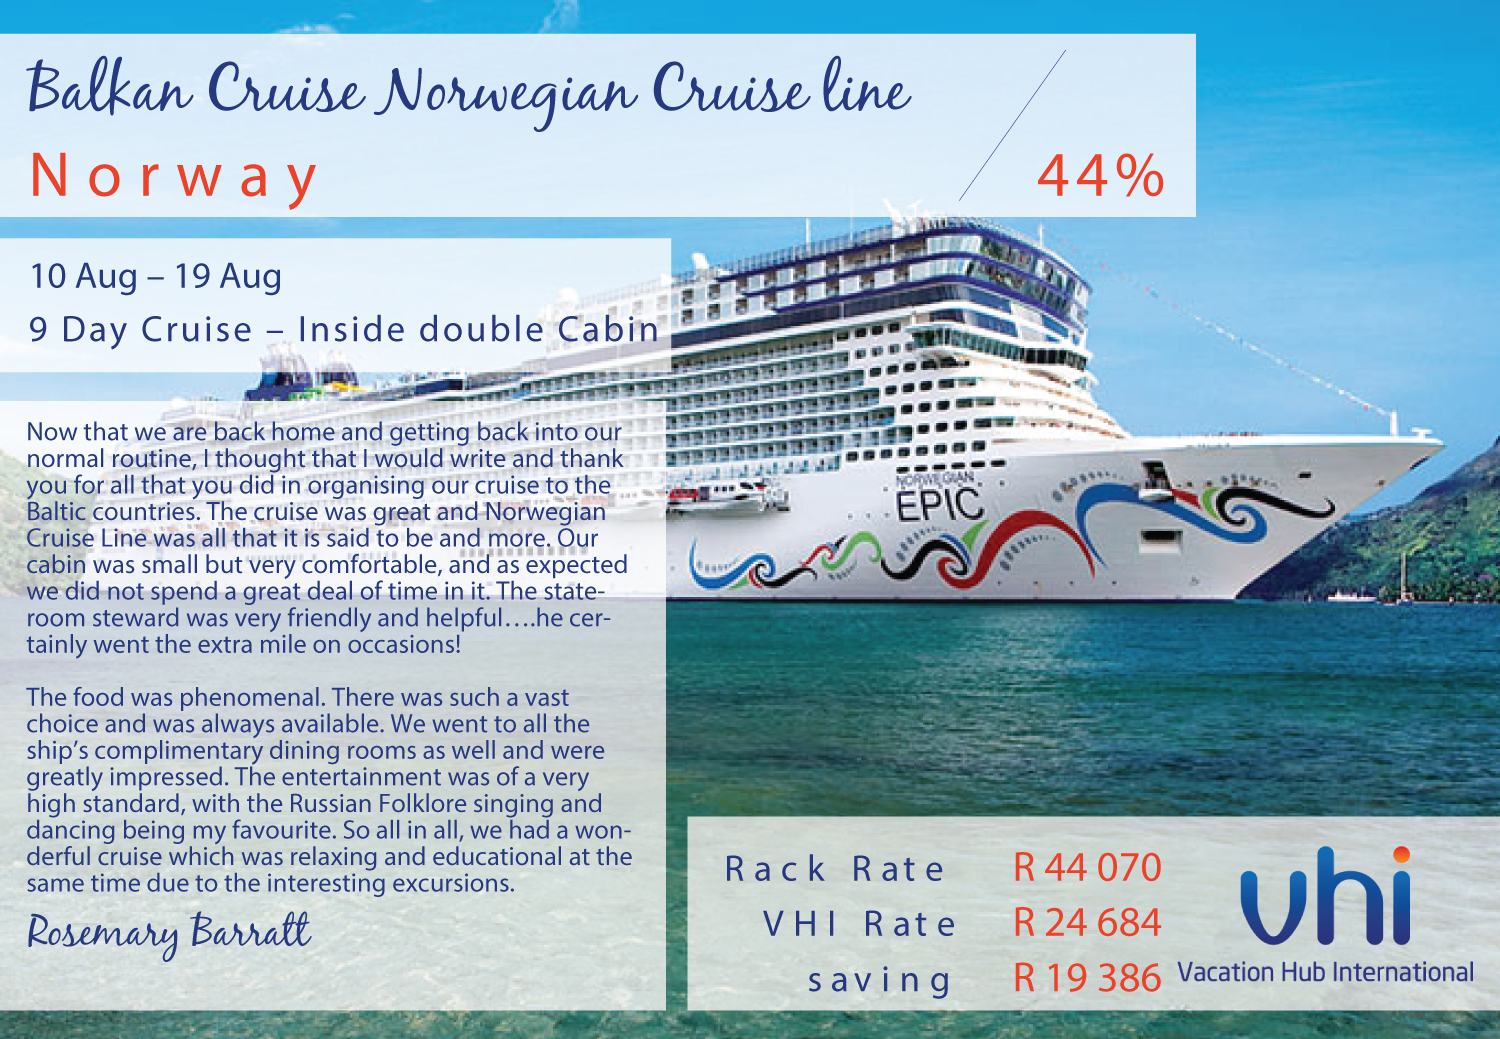 Vacation Hub International Review Balkan Cruise Norwegian Cruise line